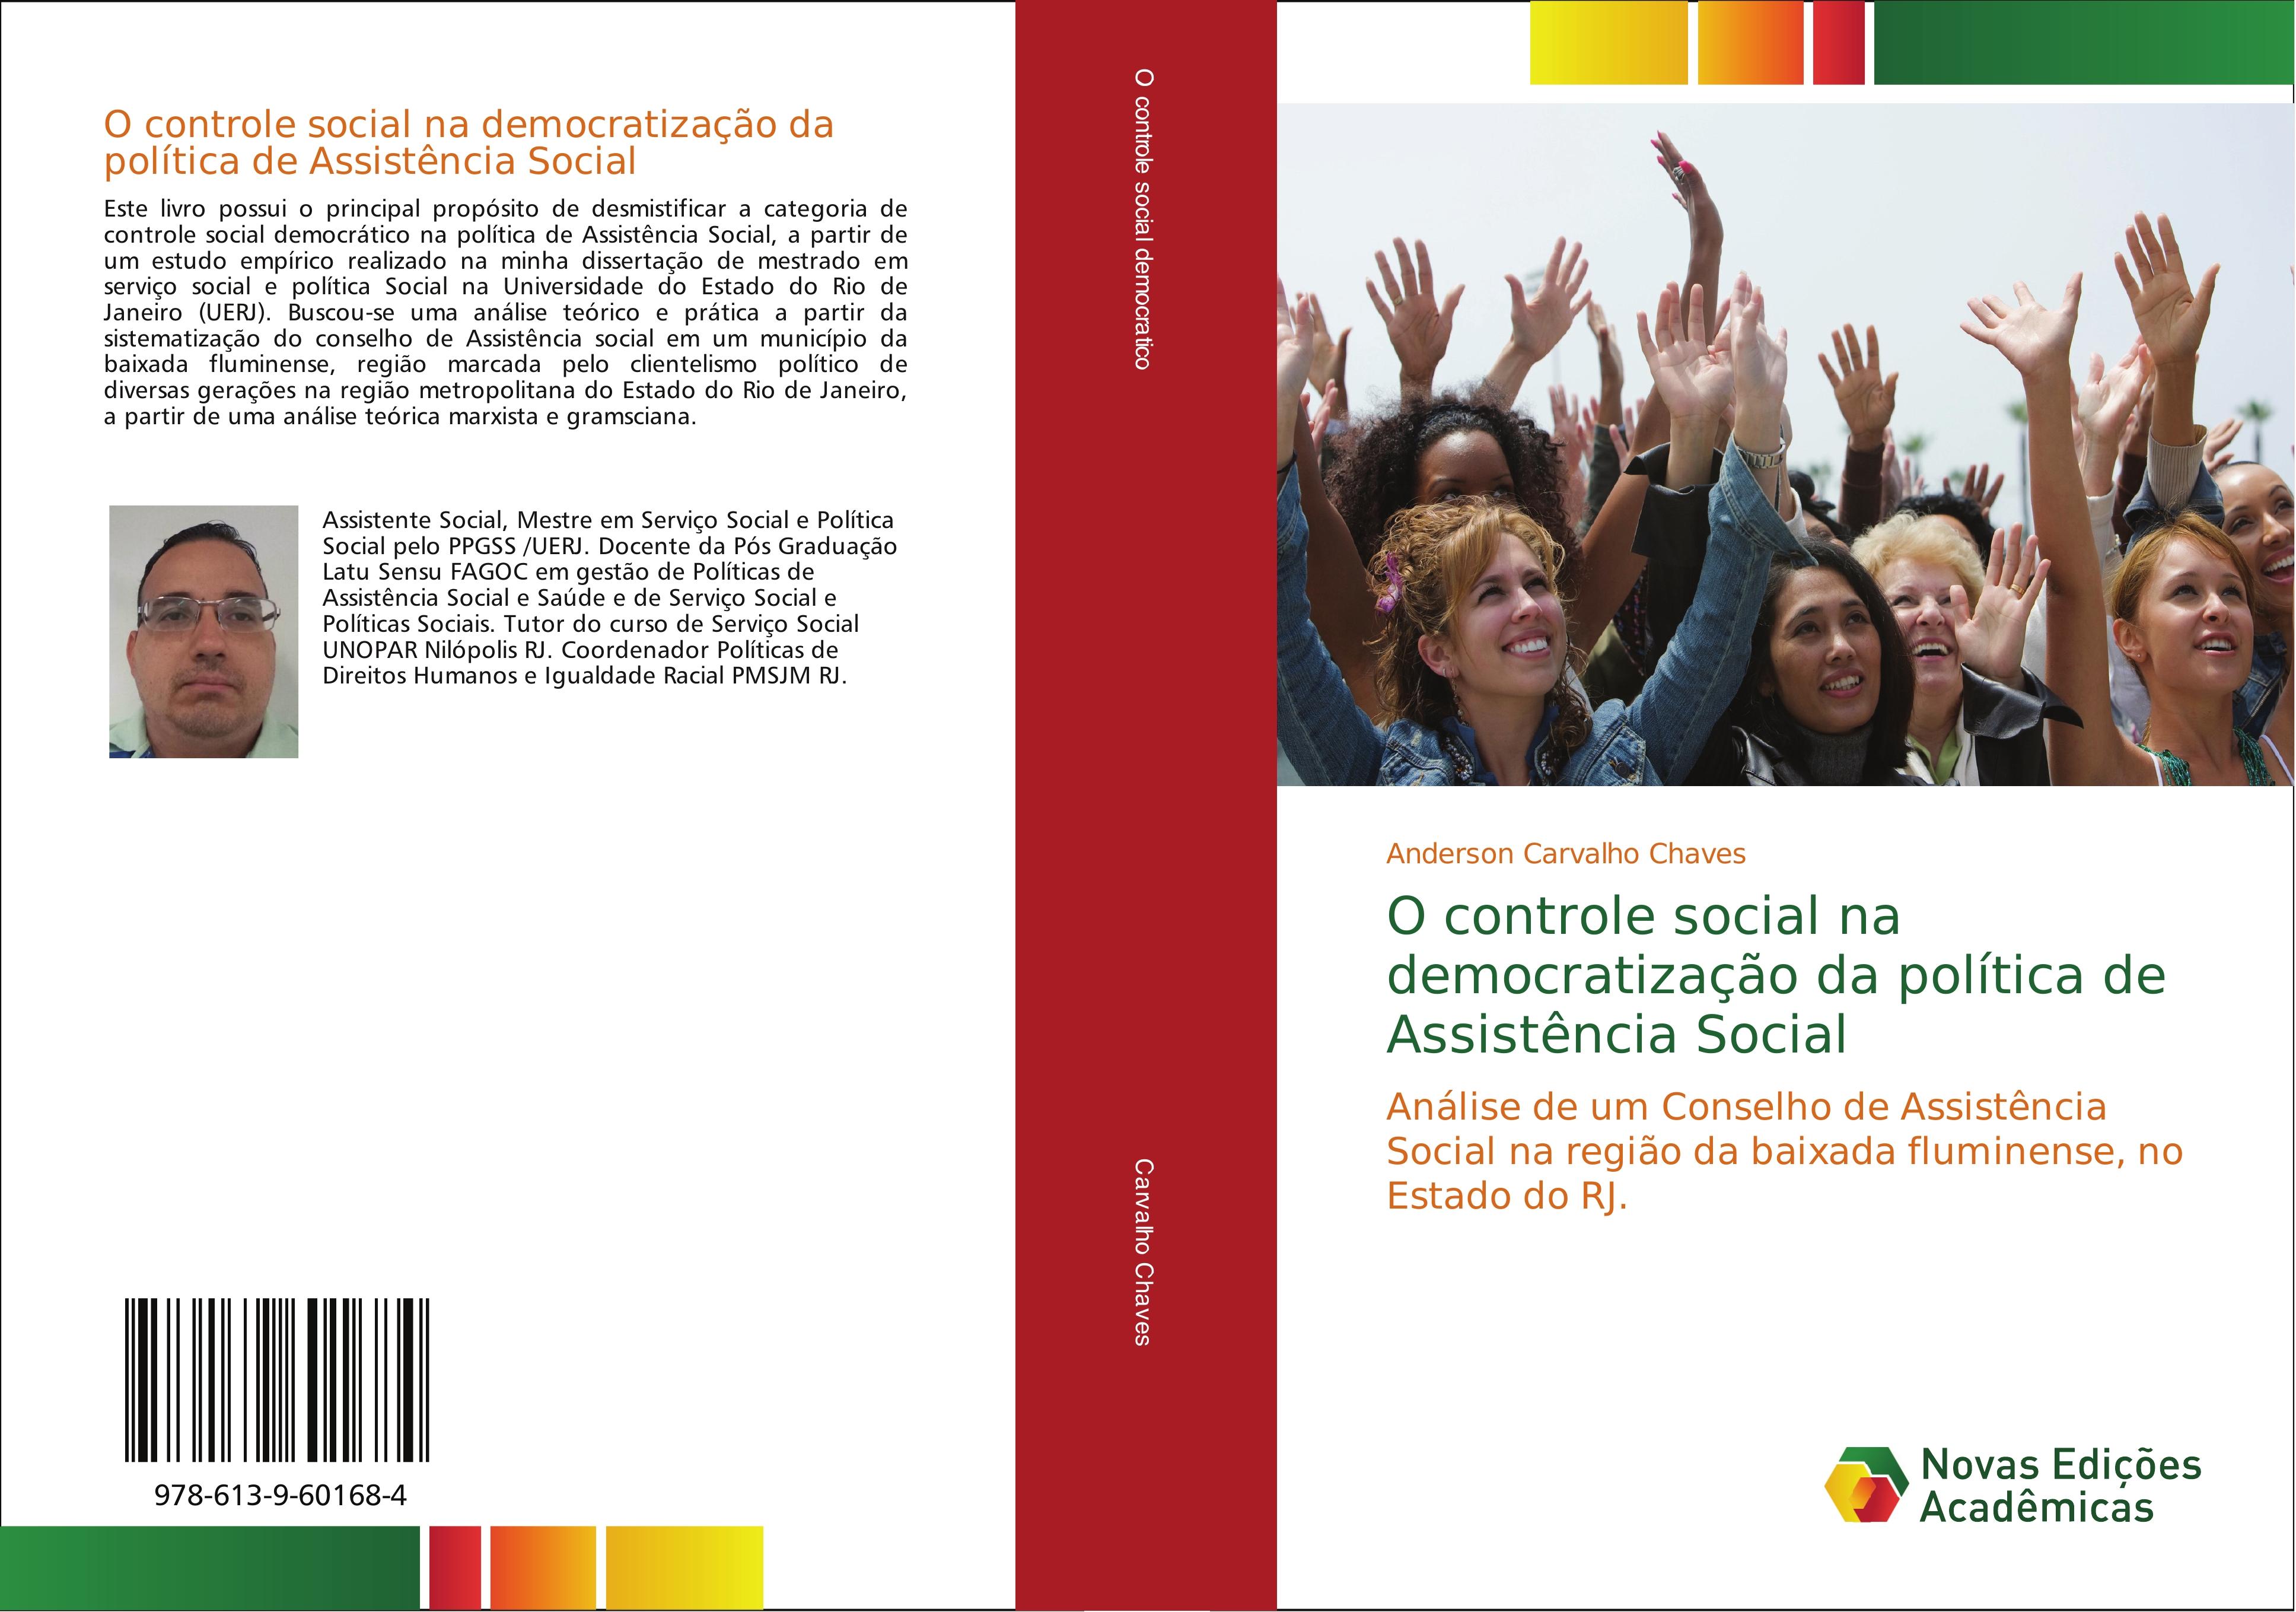 O controle social na democratização da política de Assistência Social - Anderson Carvalho Chaves